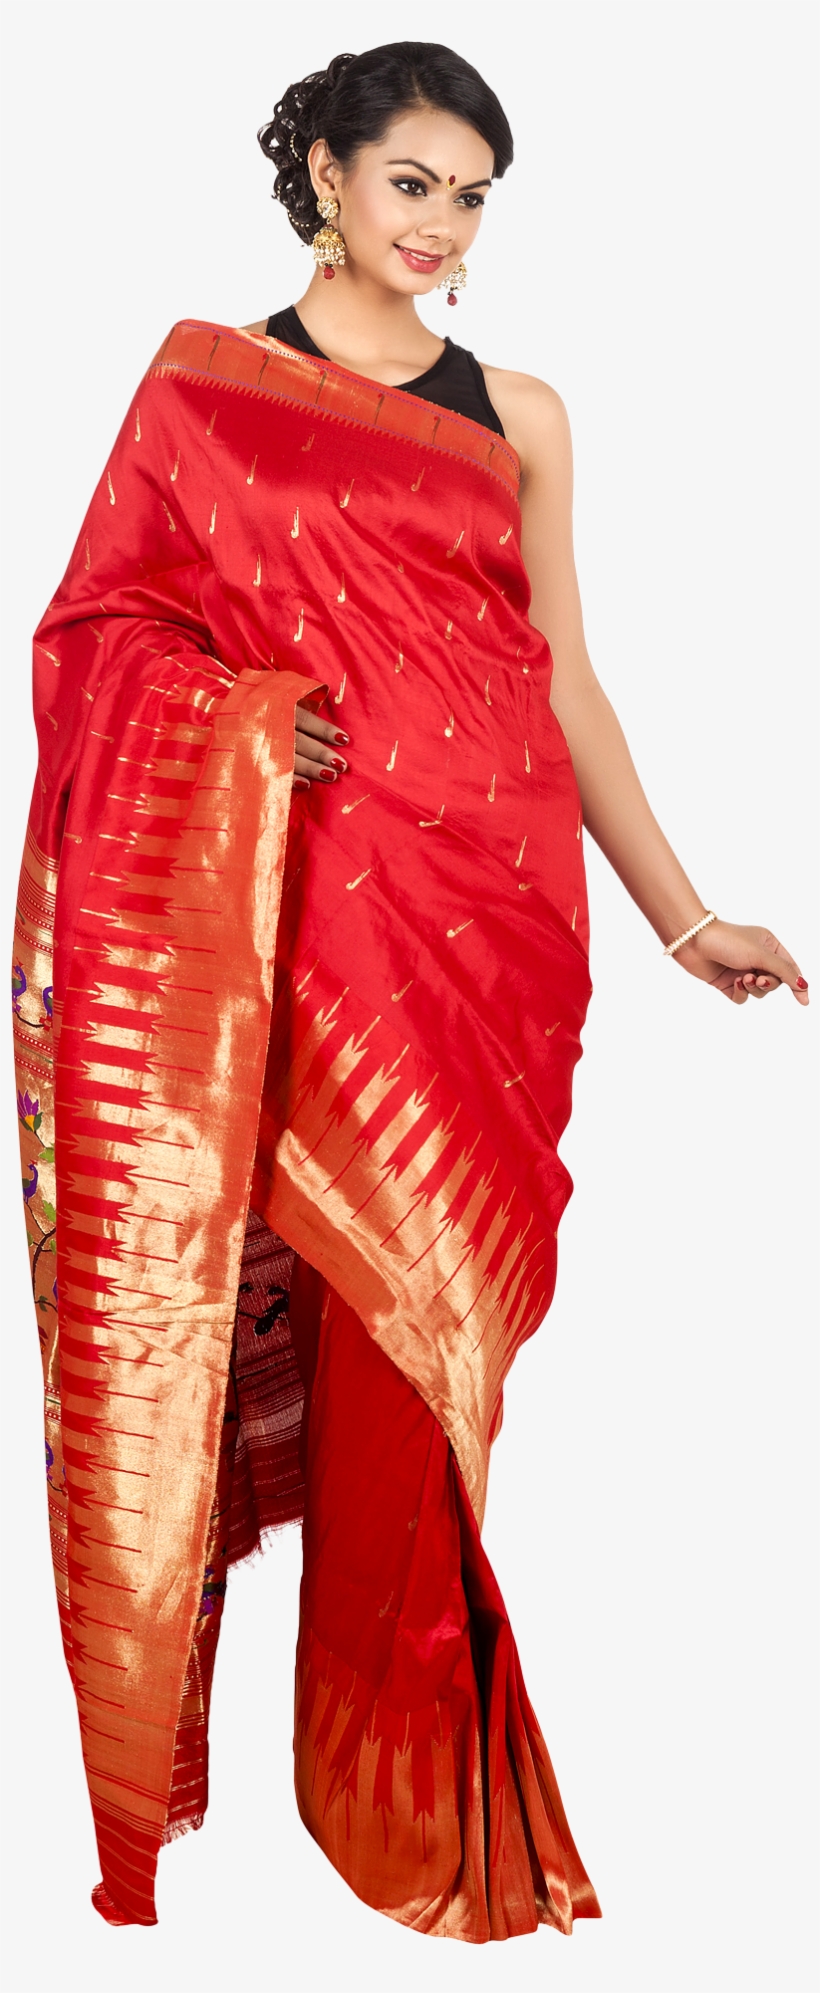 Wedding Saree Model Png Transparent - Saree Png, transparent png #86528